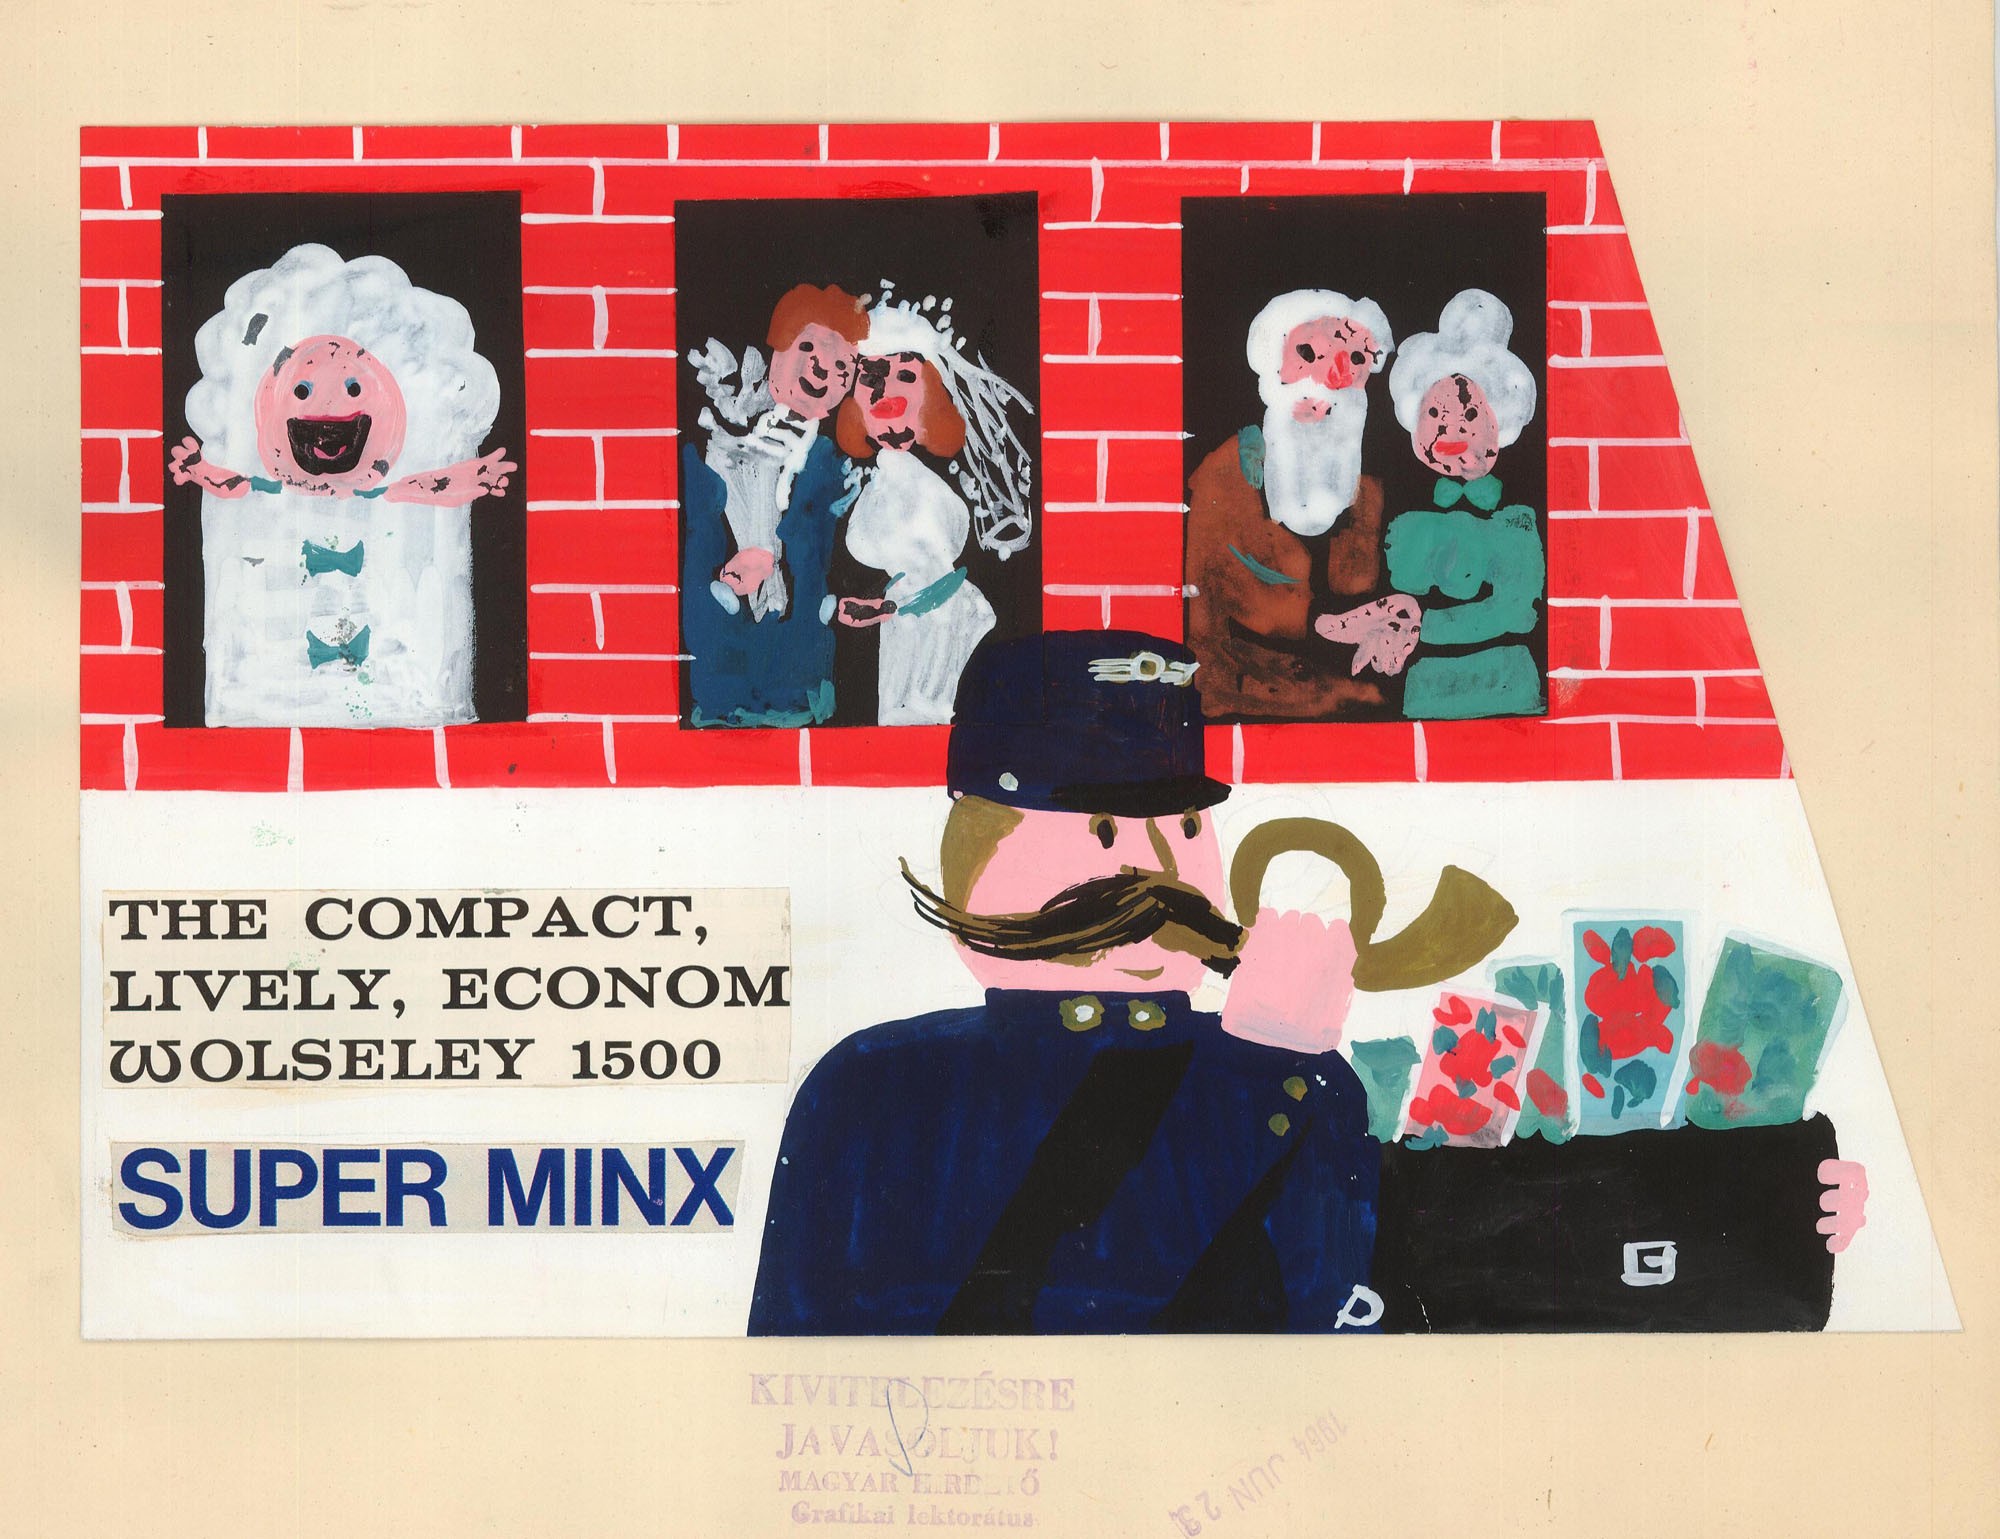 Postai szolgáltatásokat népszerűsítő kiadvány terve, felirata: The compact, lively, econom wolseley 1500 super minx (Postamúzeum CC BY-NC-SA)